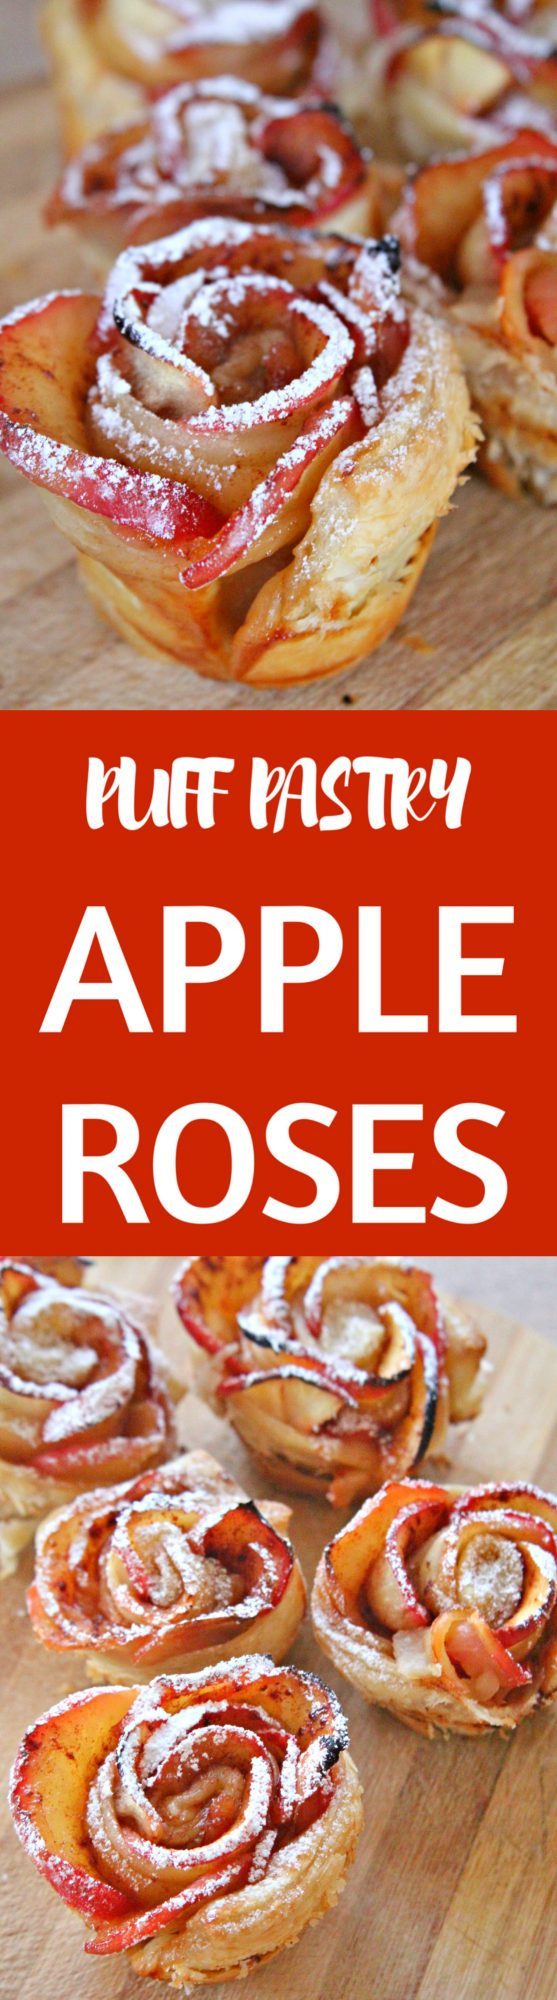 Apple roses recipe